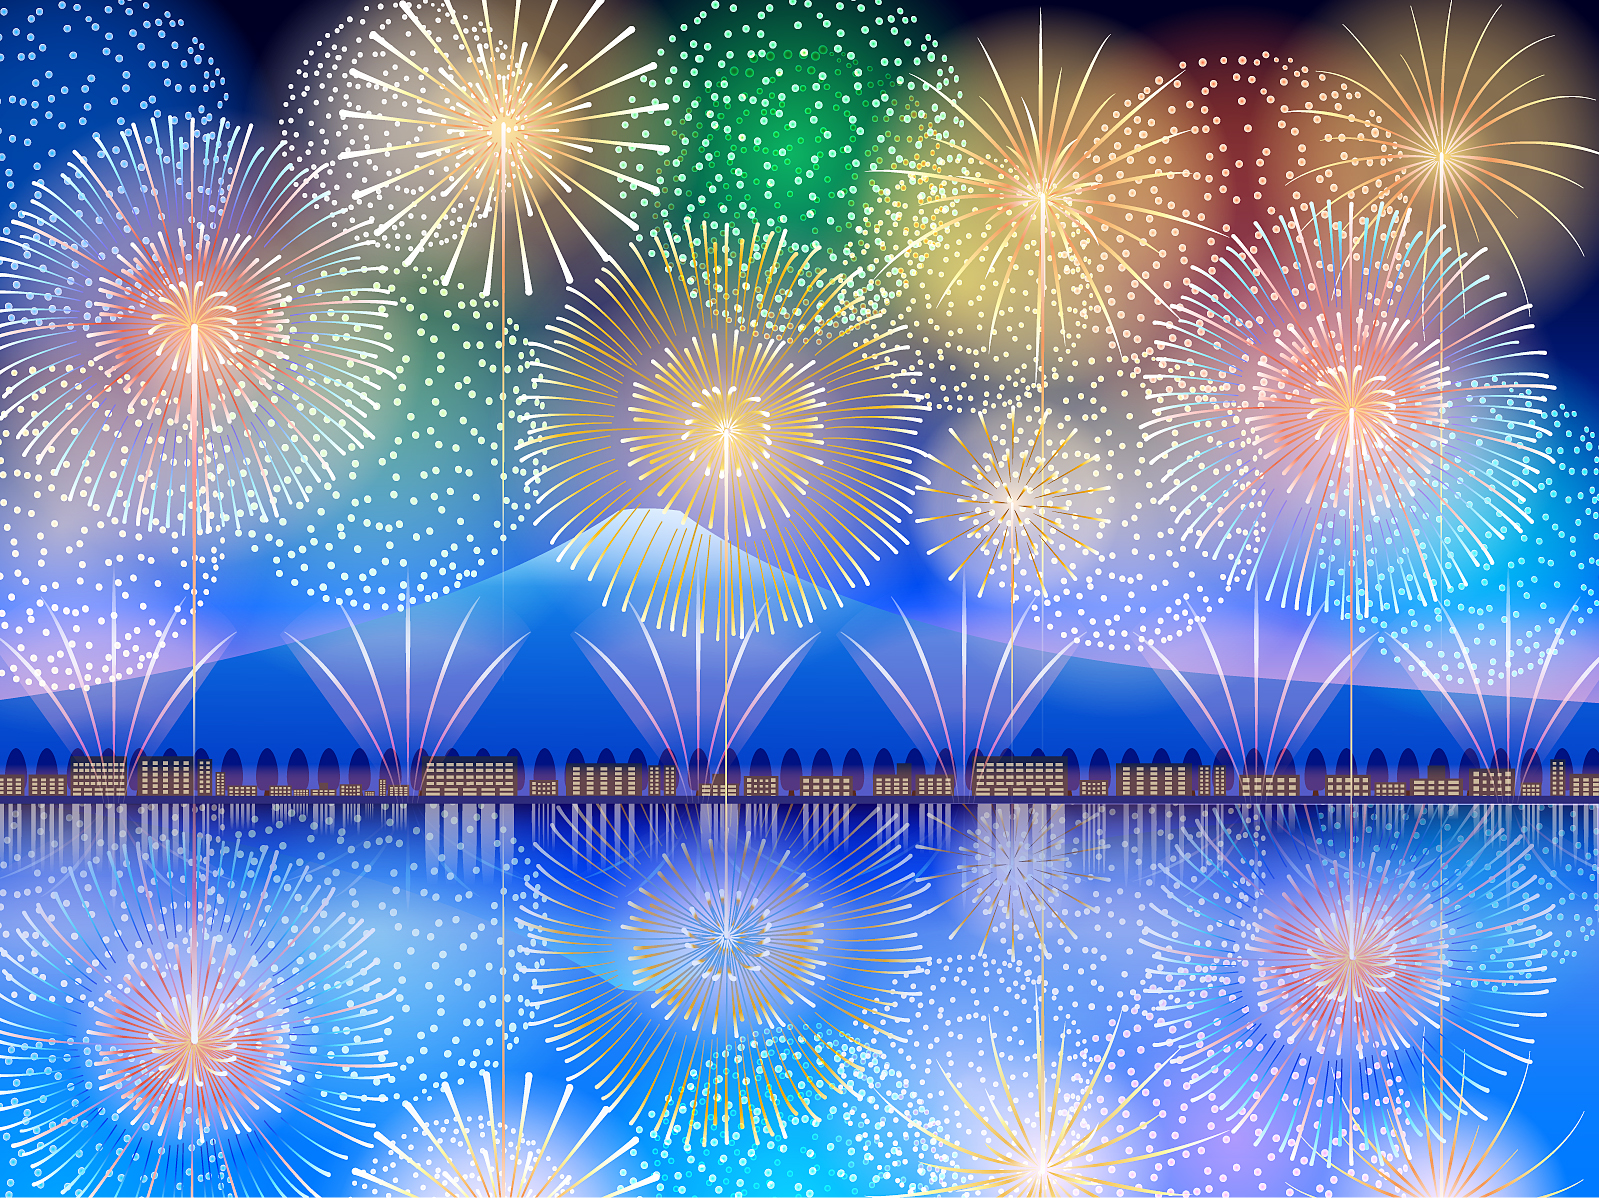 延期になっていた「非密の花火大会in琵琶湖一周2021」の開催日程が決まりました！【10月2日】